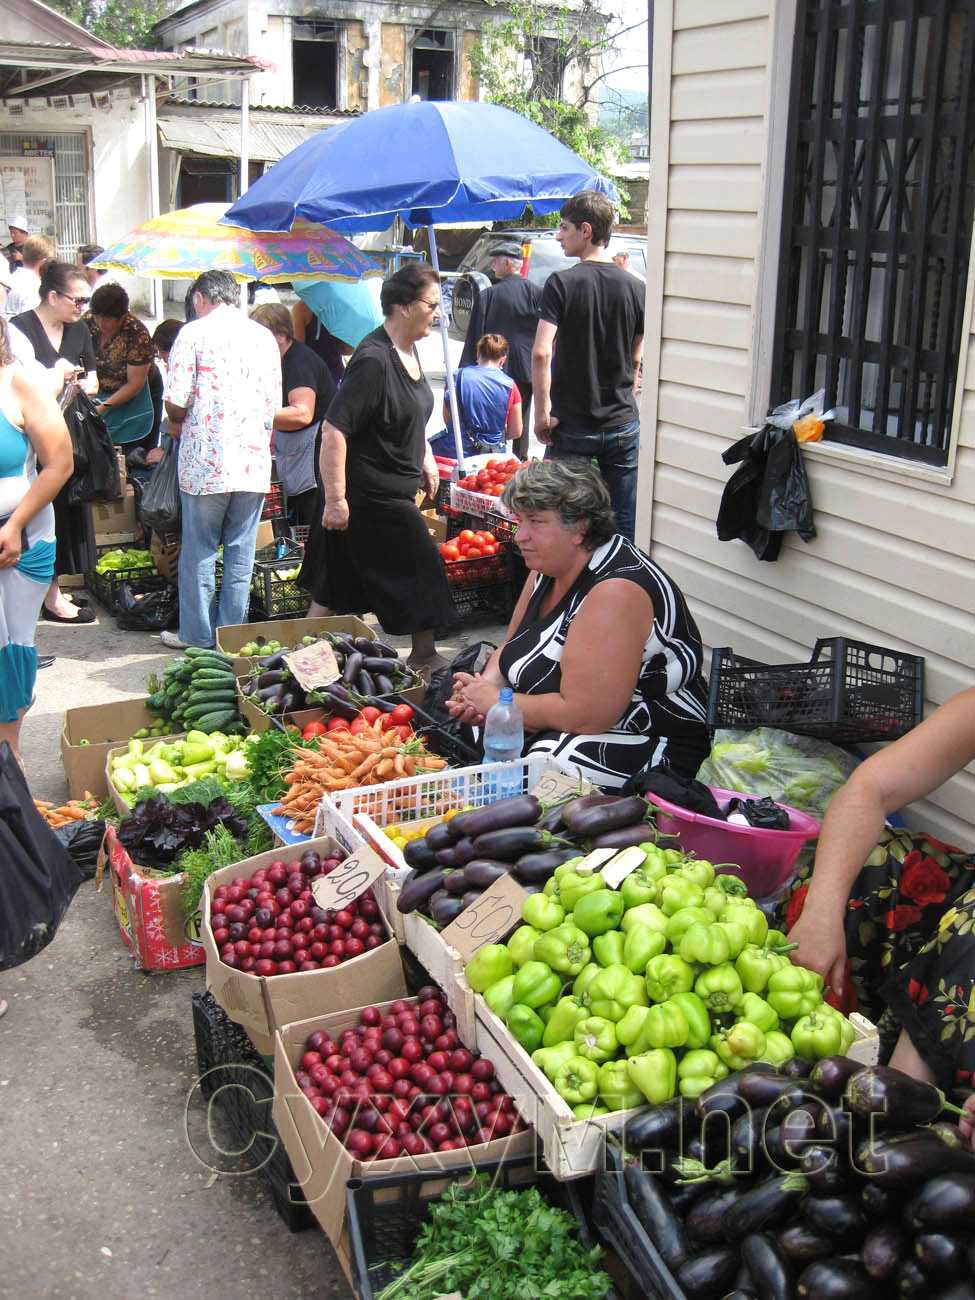 уличная торговля местными овощами и фруктами